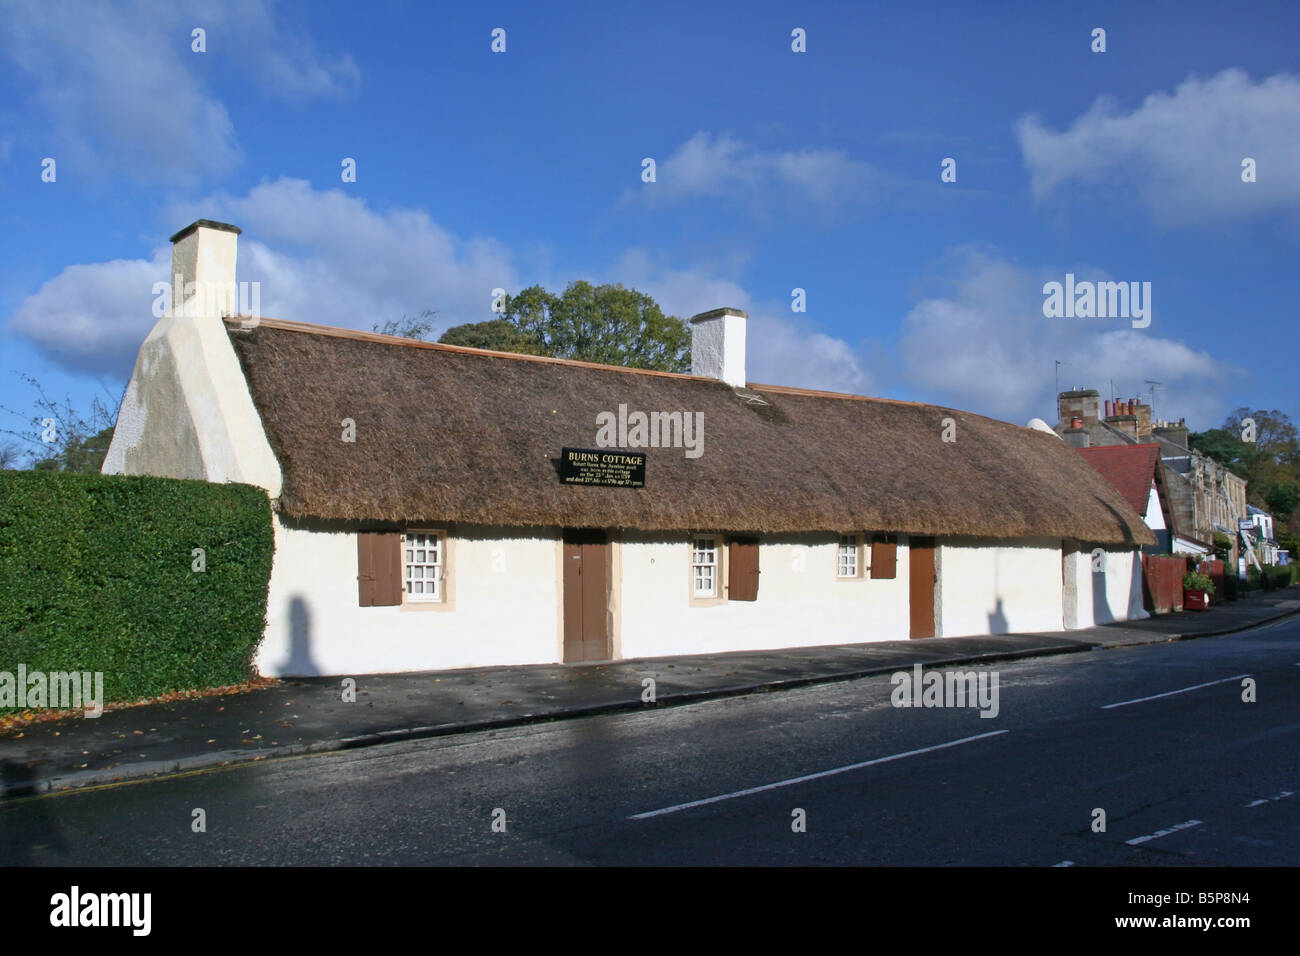 Robert Burns, le poète de l'Ayrshire est né dans cette maison le 25 janvier 1759 Banque D'Images